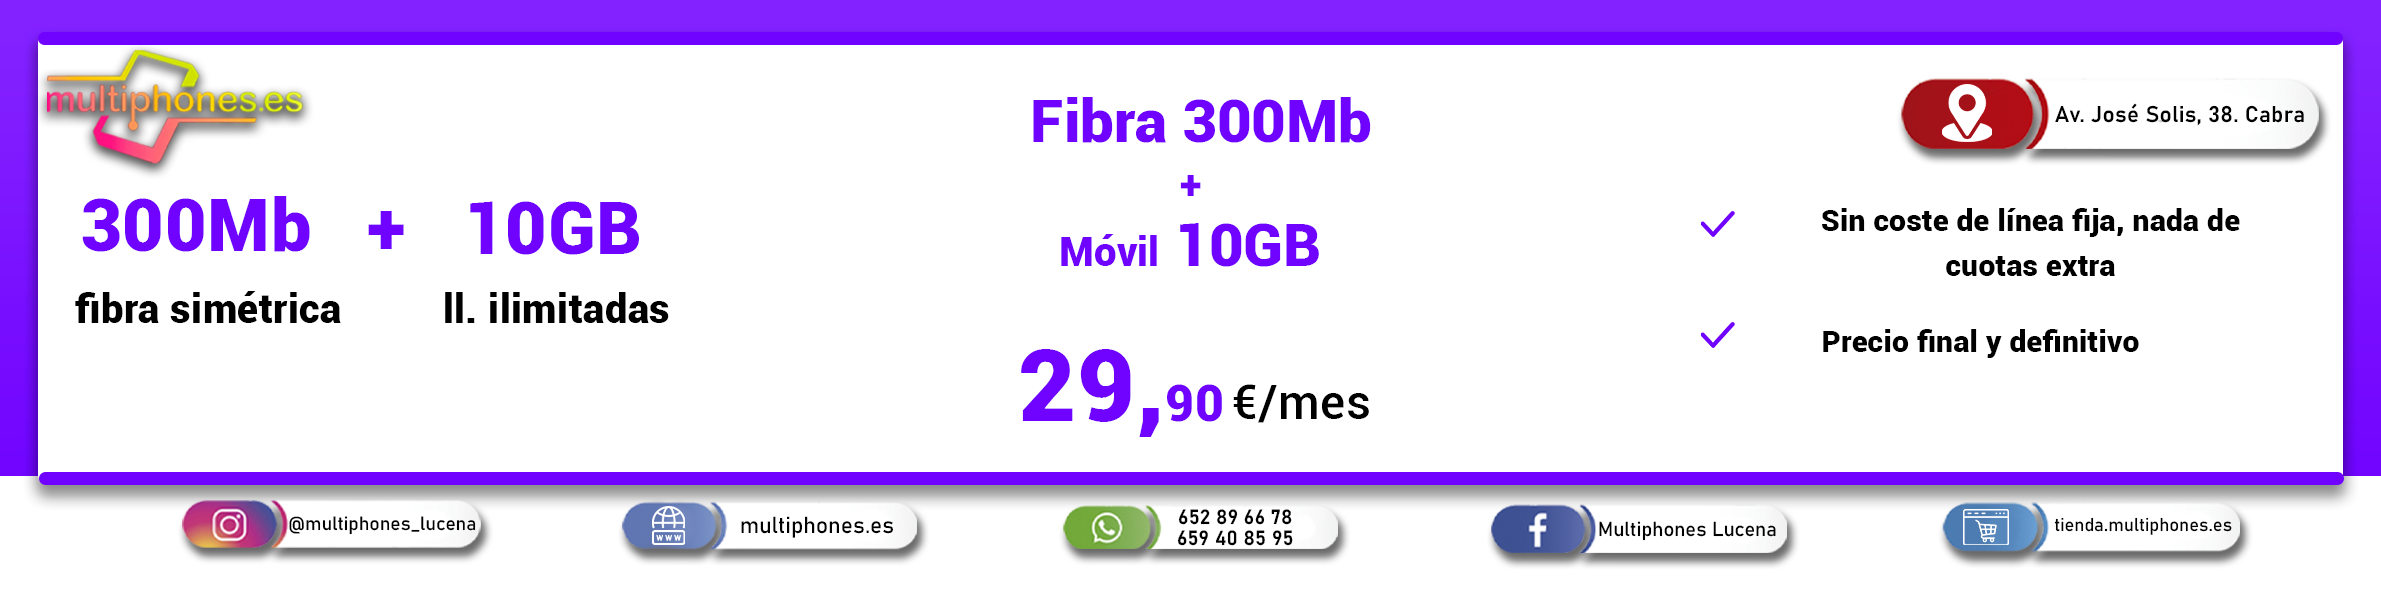 Finetwork Fibra 300Mb + Móvil 10GB